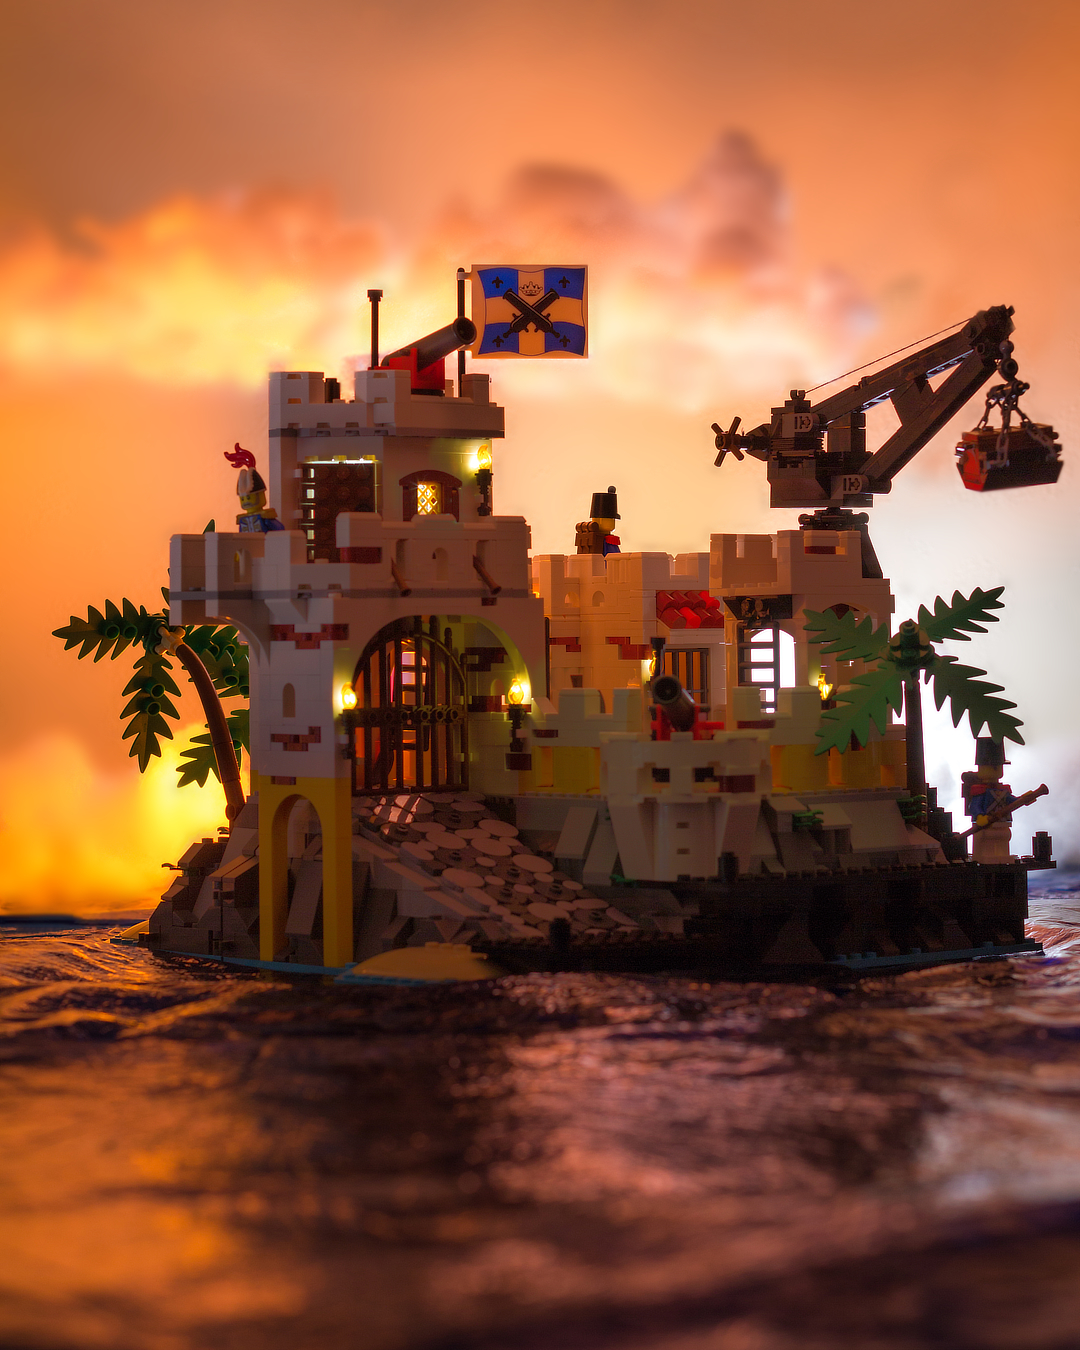 LEGO Pirates 10320 Fortress of Eldorado. New - NEVER OPENED ORIGINAL